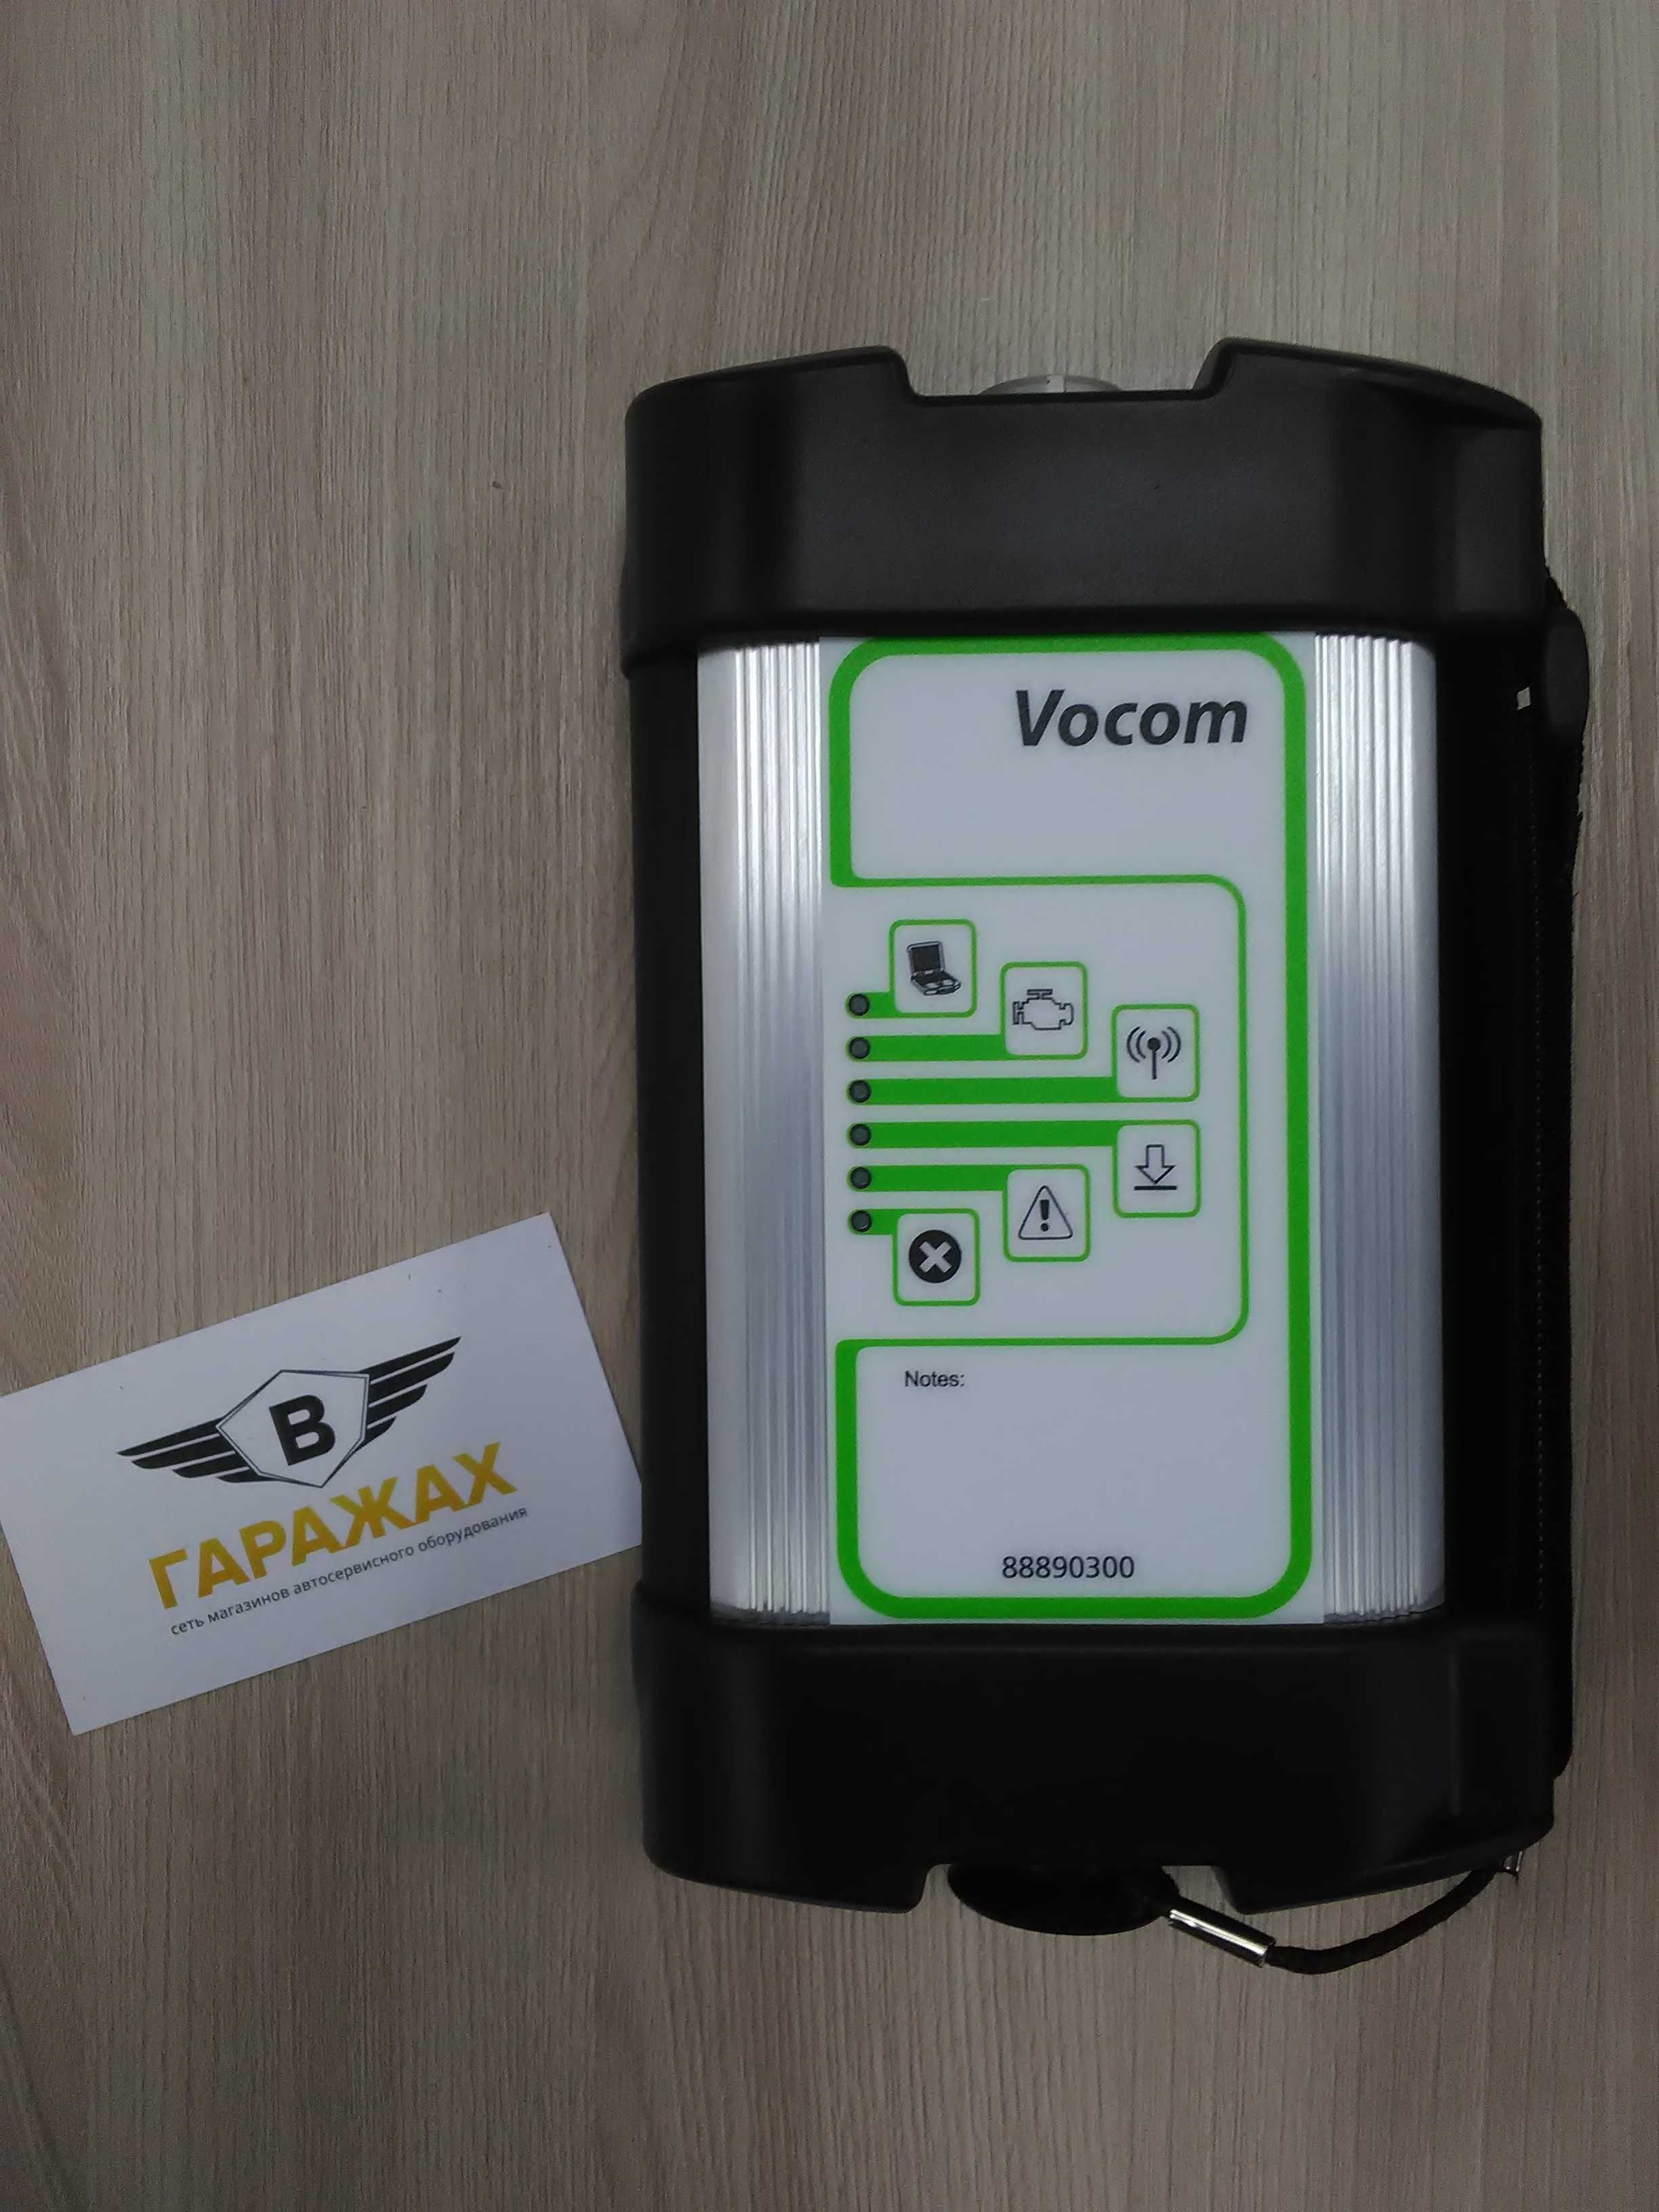 Volvo VoCom
прибор для диагностики автомобилей VOLVO